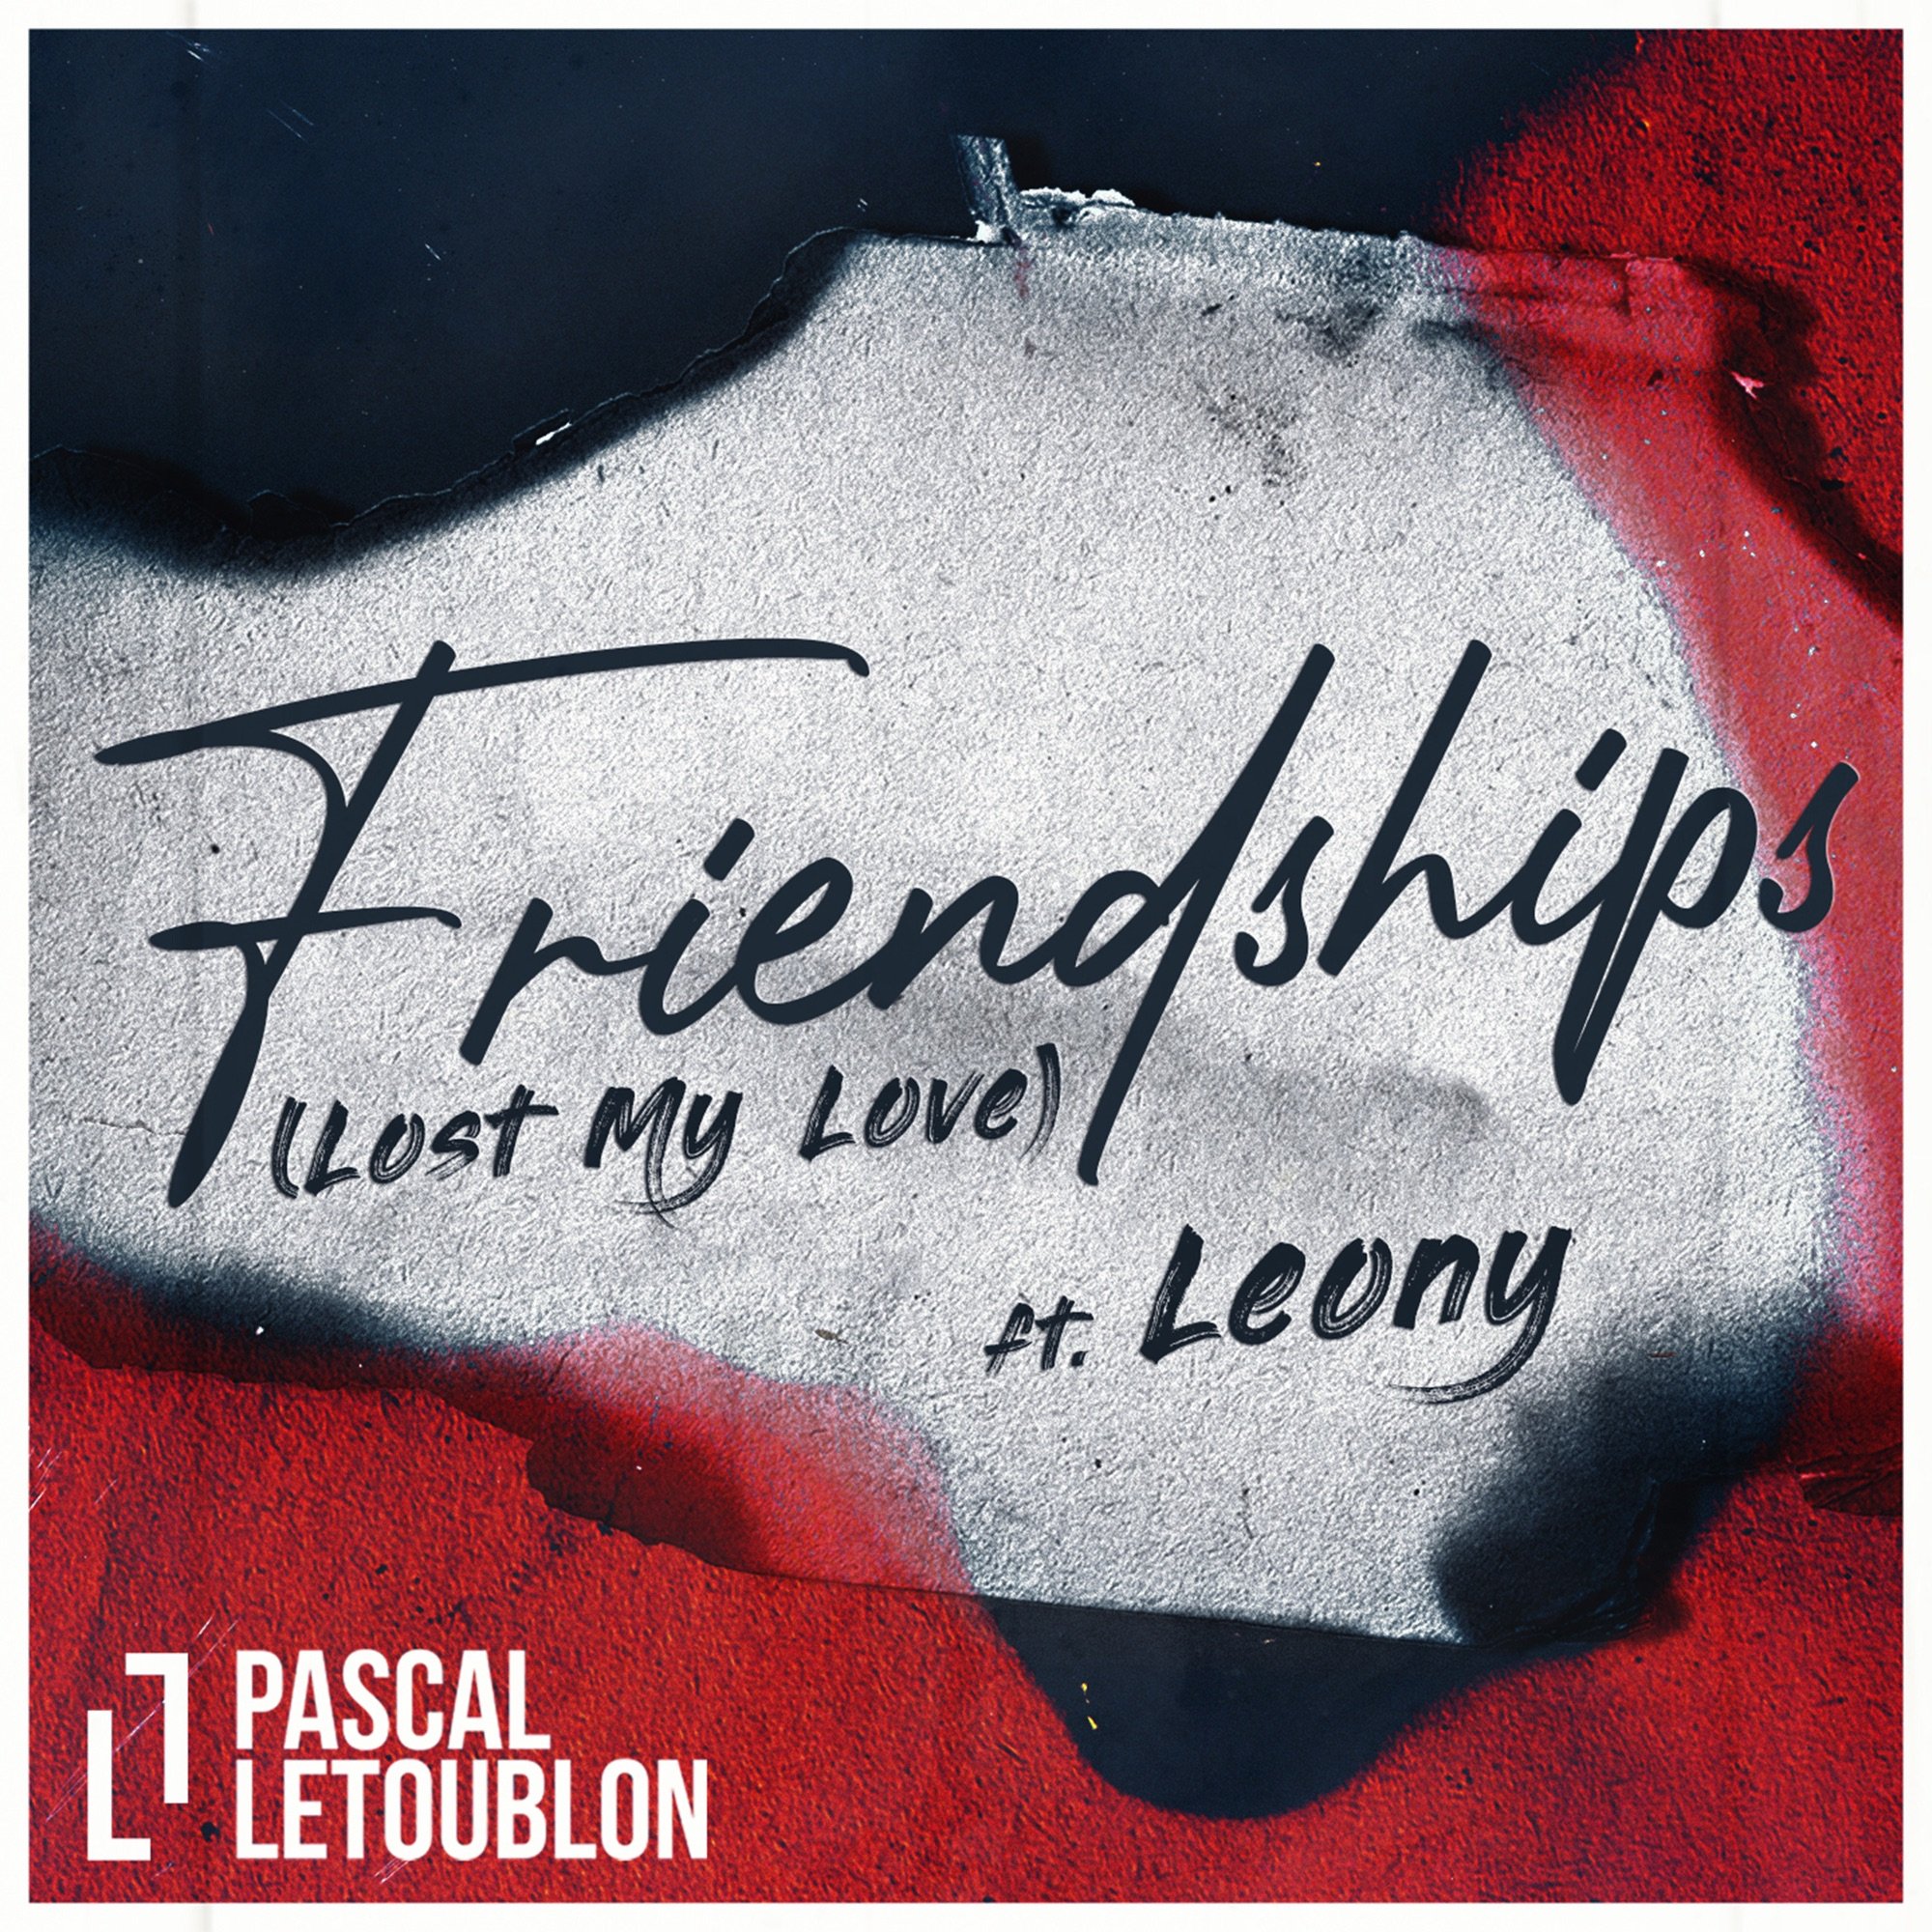 Песня pascal friendship. Pascal Letoublon Friendships. Pascal Letoublon, Leony - Friendships (Lost my Love). Pascal Letoublon feat. Leony. Friendships Паскаль Летублон.